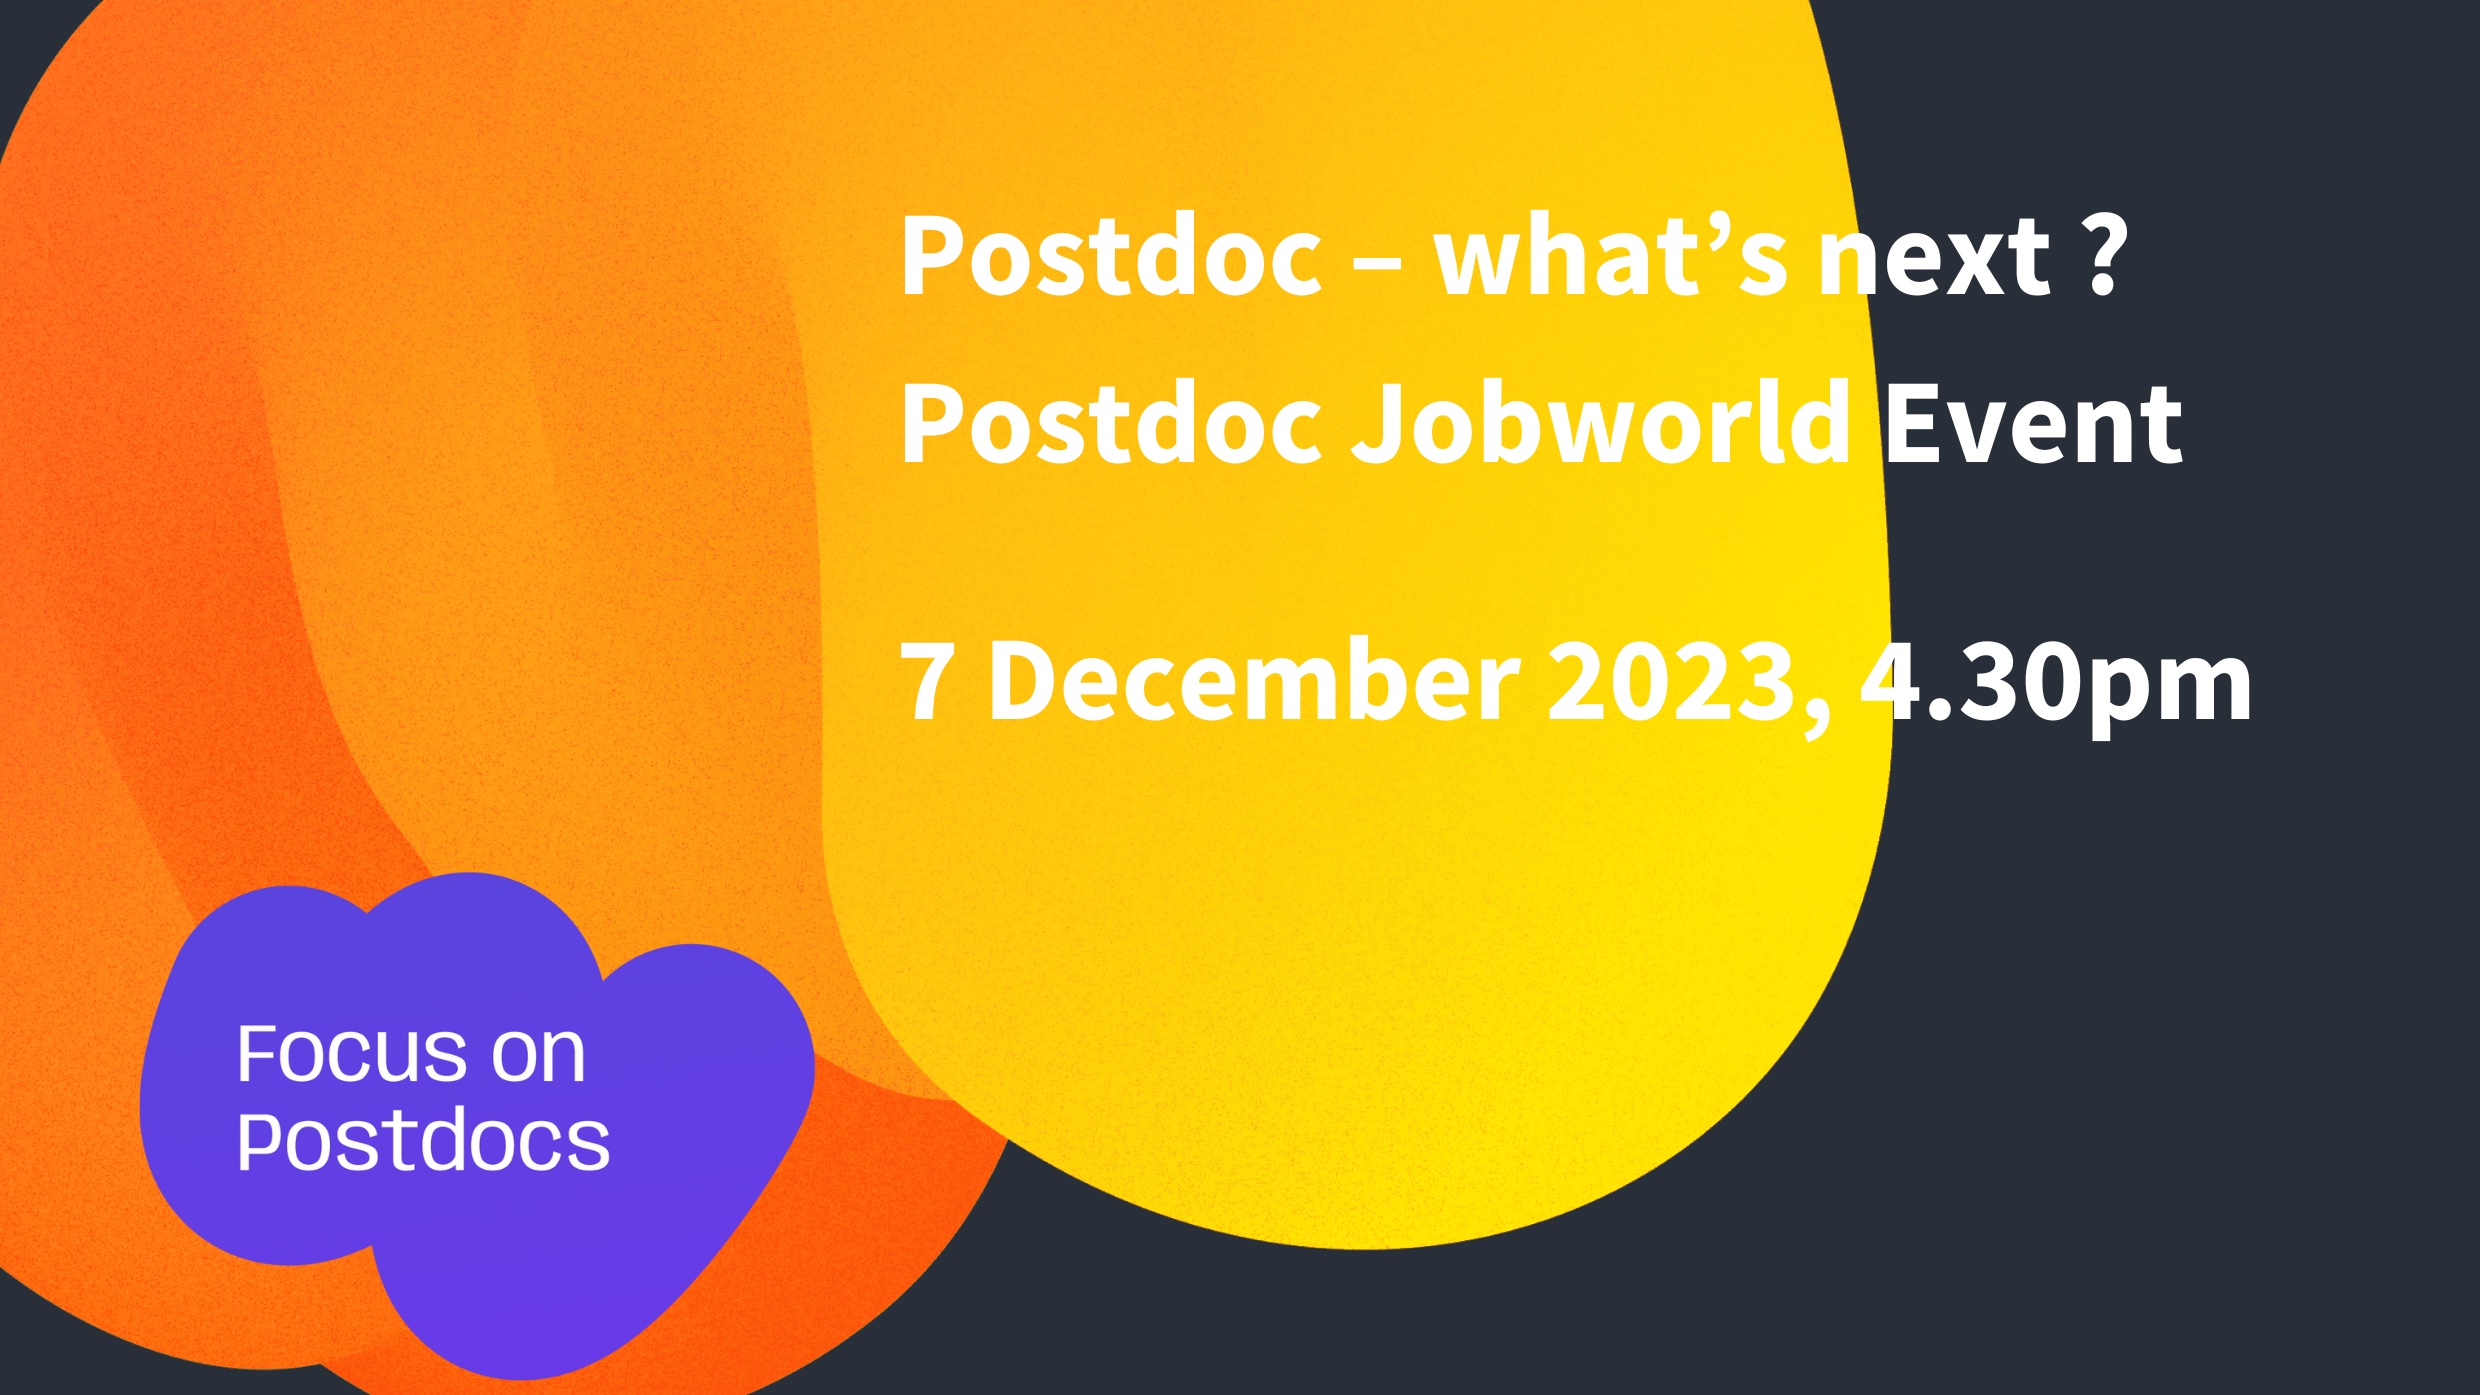 Postdoc Jobworld